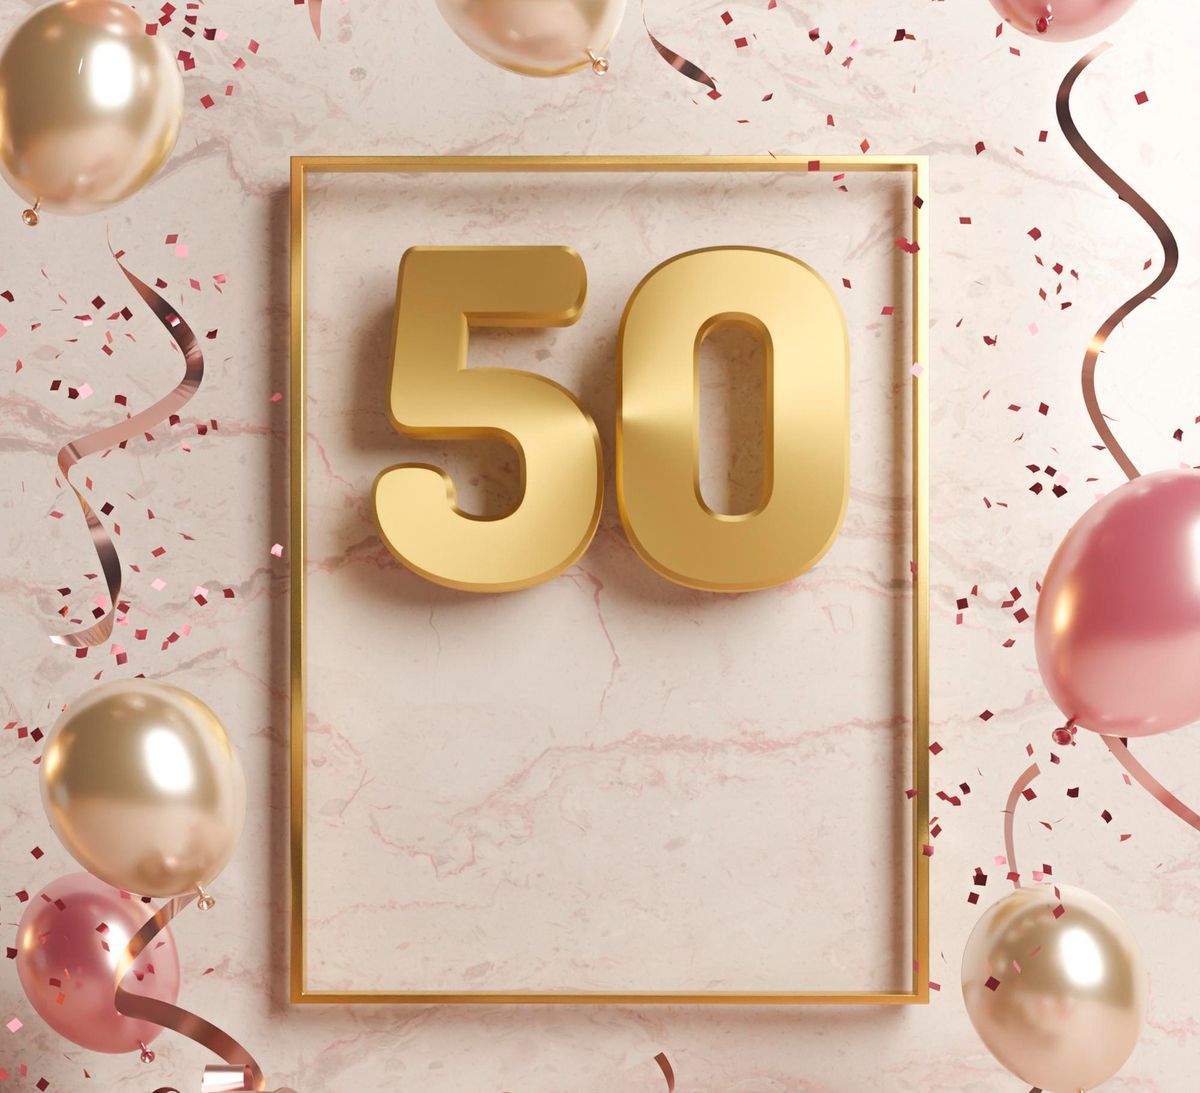 Auguri per i 50 anni: le frasi più divertenti da dedicare ai cinquantenni!